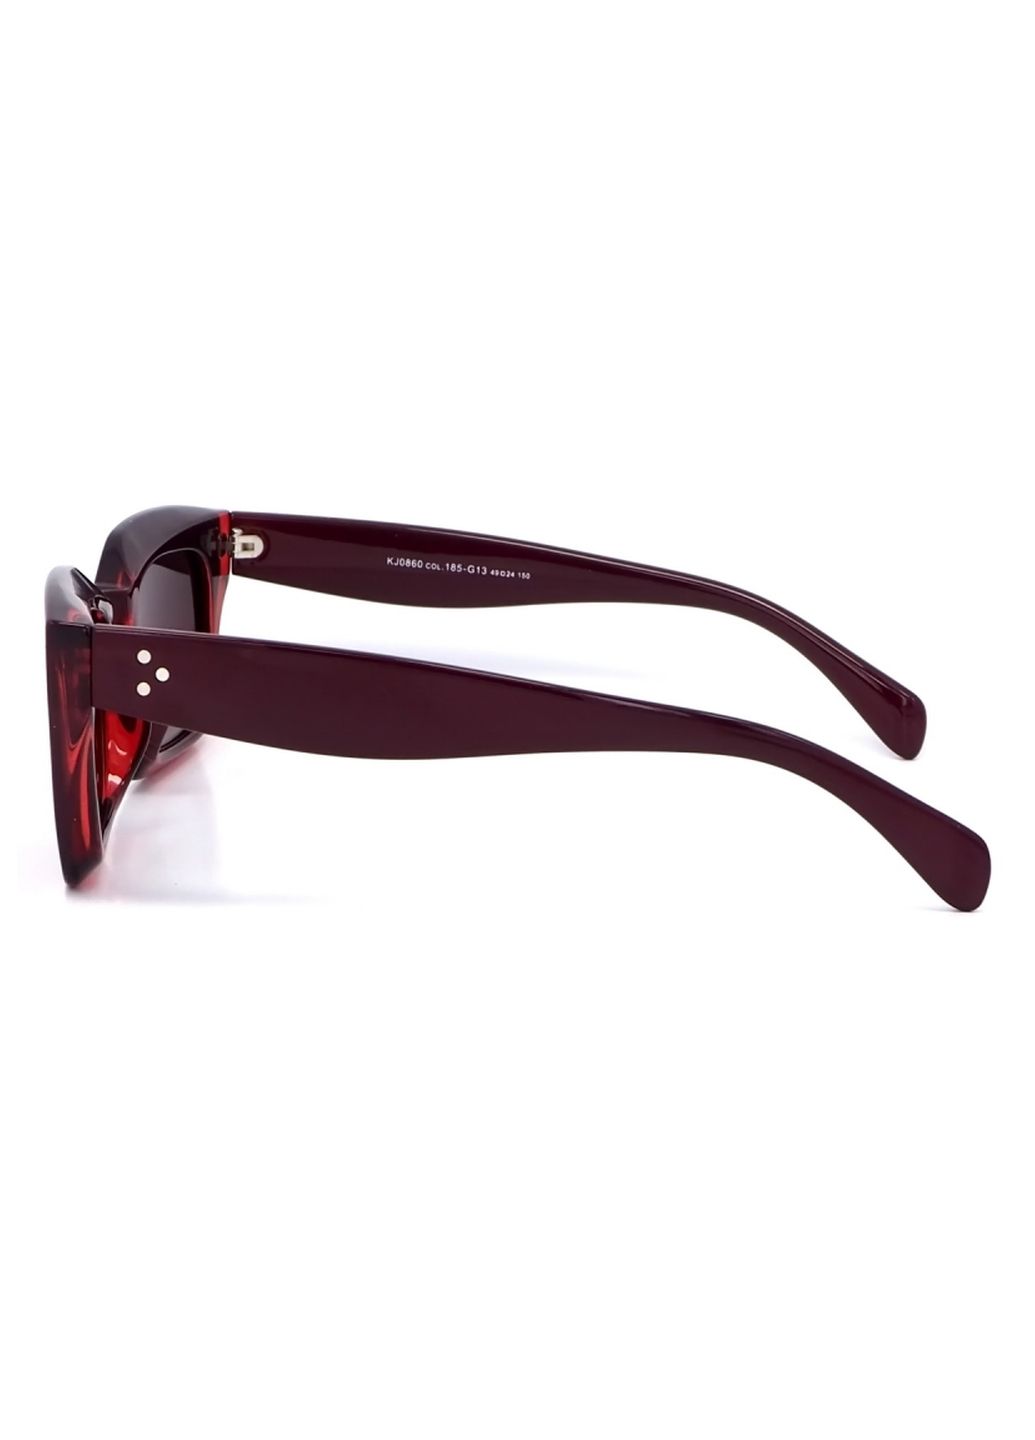 Купить Женские солнцезащитные очки Katrin Jones с поляризацией KJ0860 180045 - Бордовый в интернет-магазине